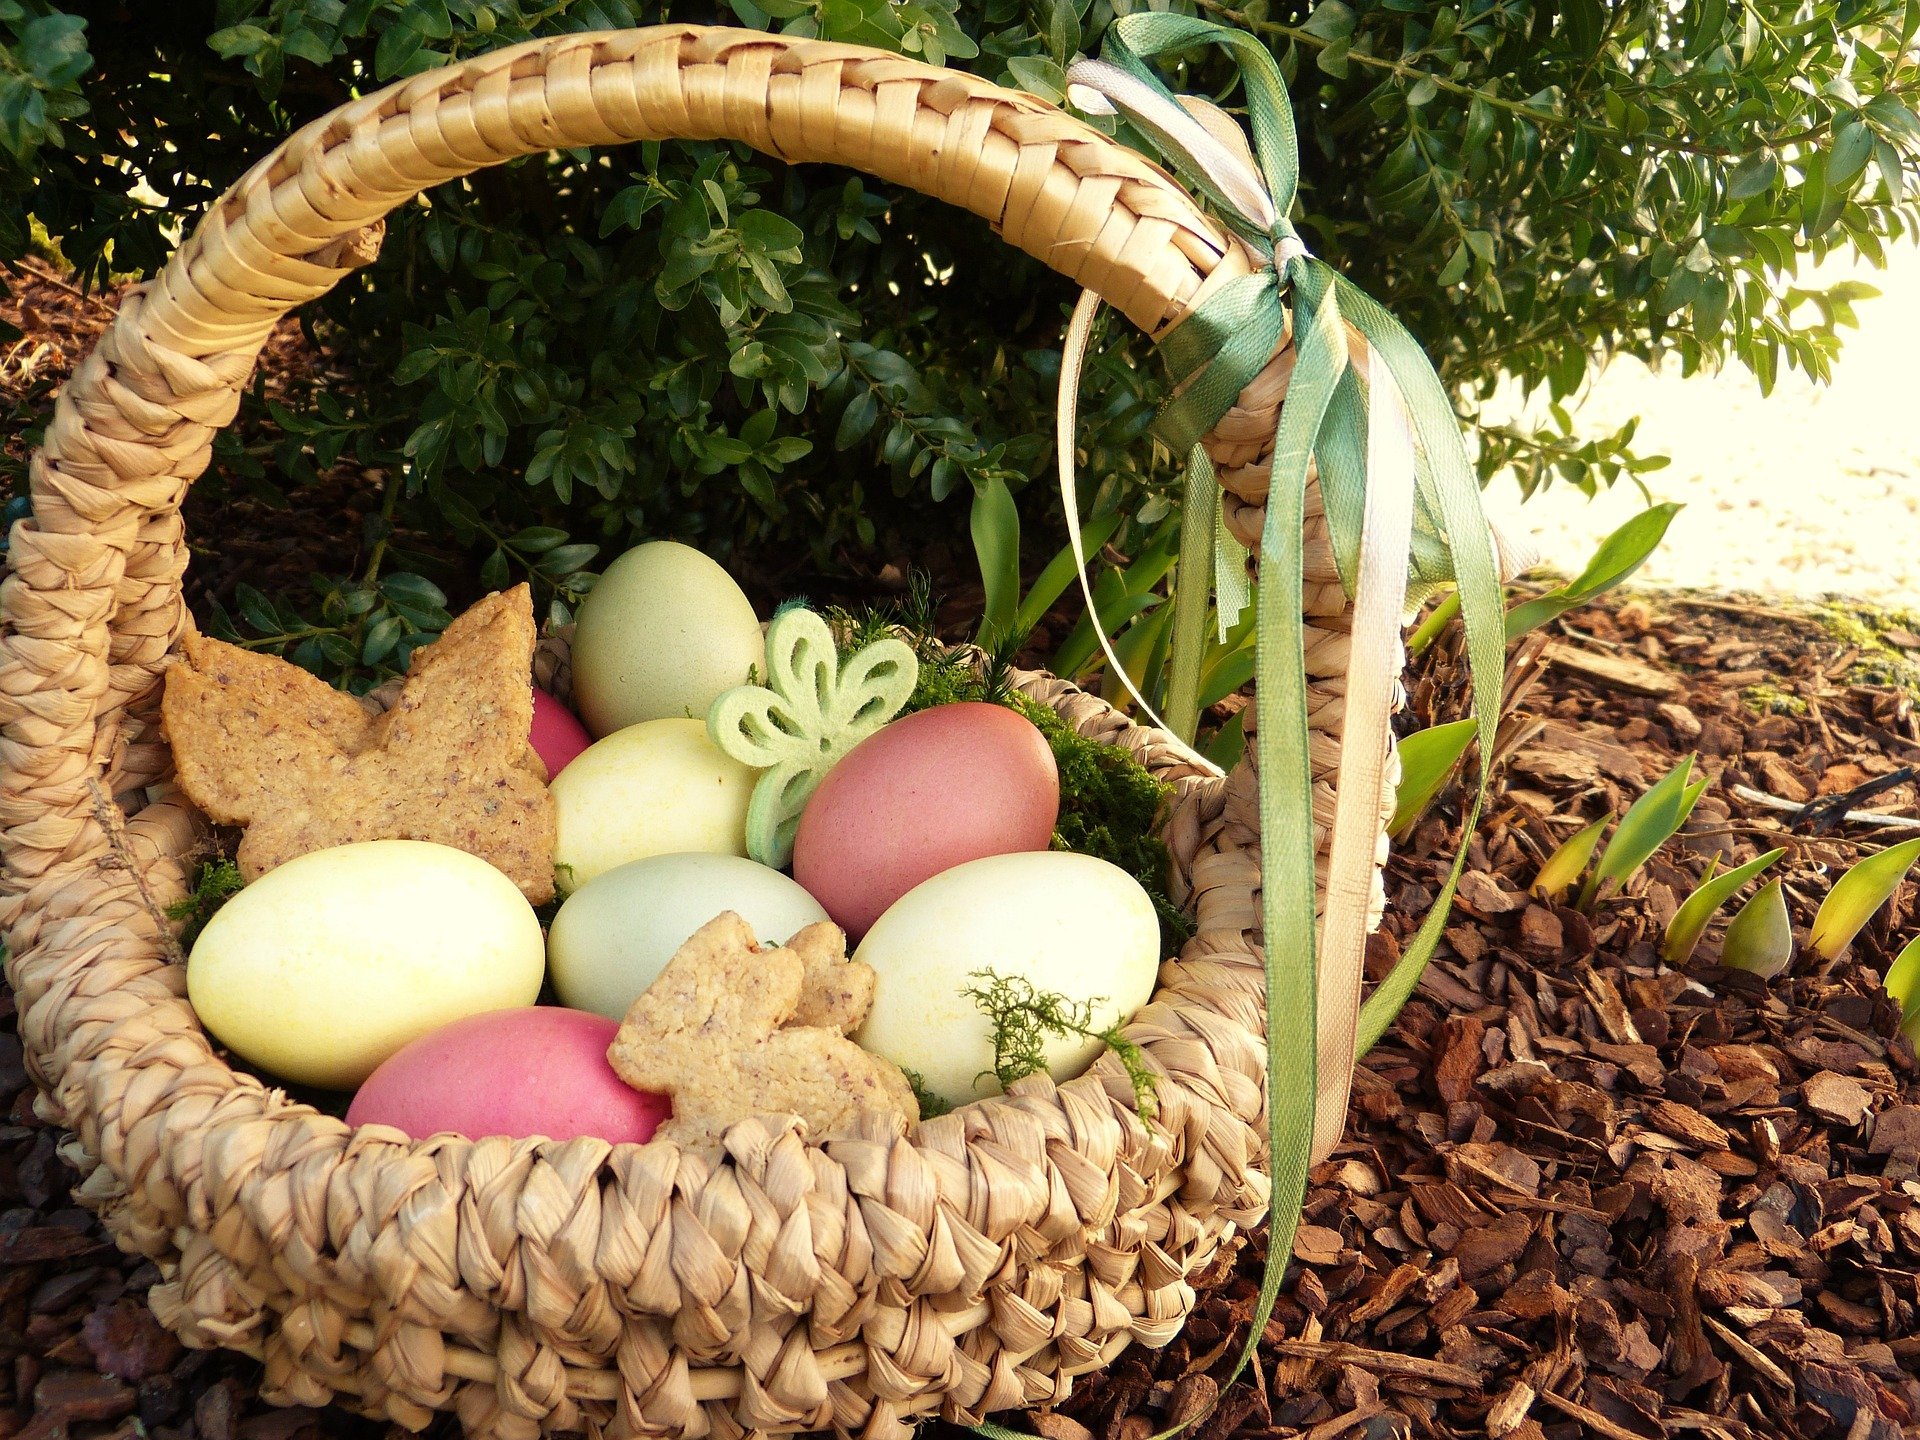 Na zdjęciu wiklinowy koszyk wielkanocny stojący w ogrodzie, z kolorowymi jajami w środku, zajączkami z pieczywa i zielonymi ozdobami. Za nim bukszpan, pod nim kora. Źródło: pixabay.com